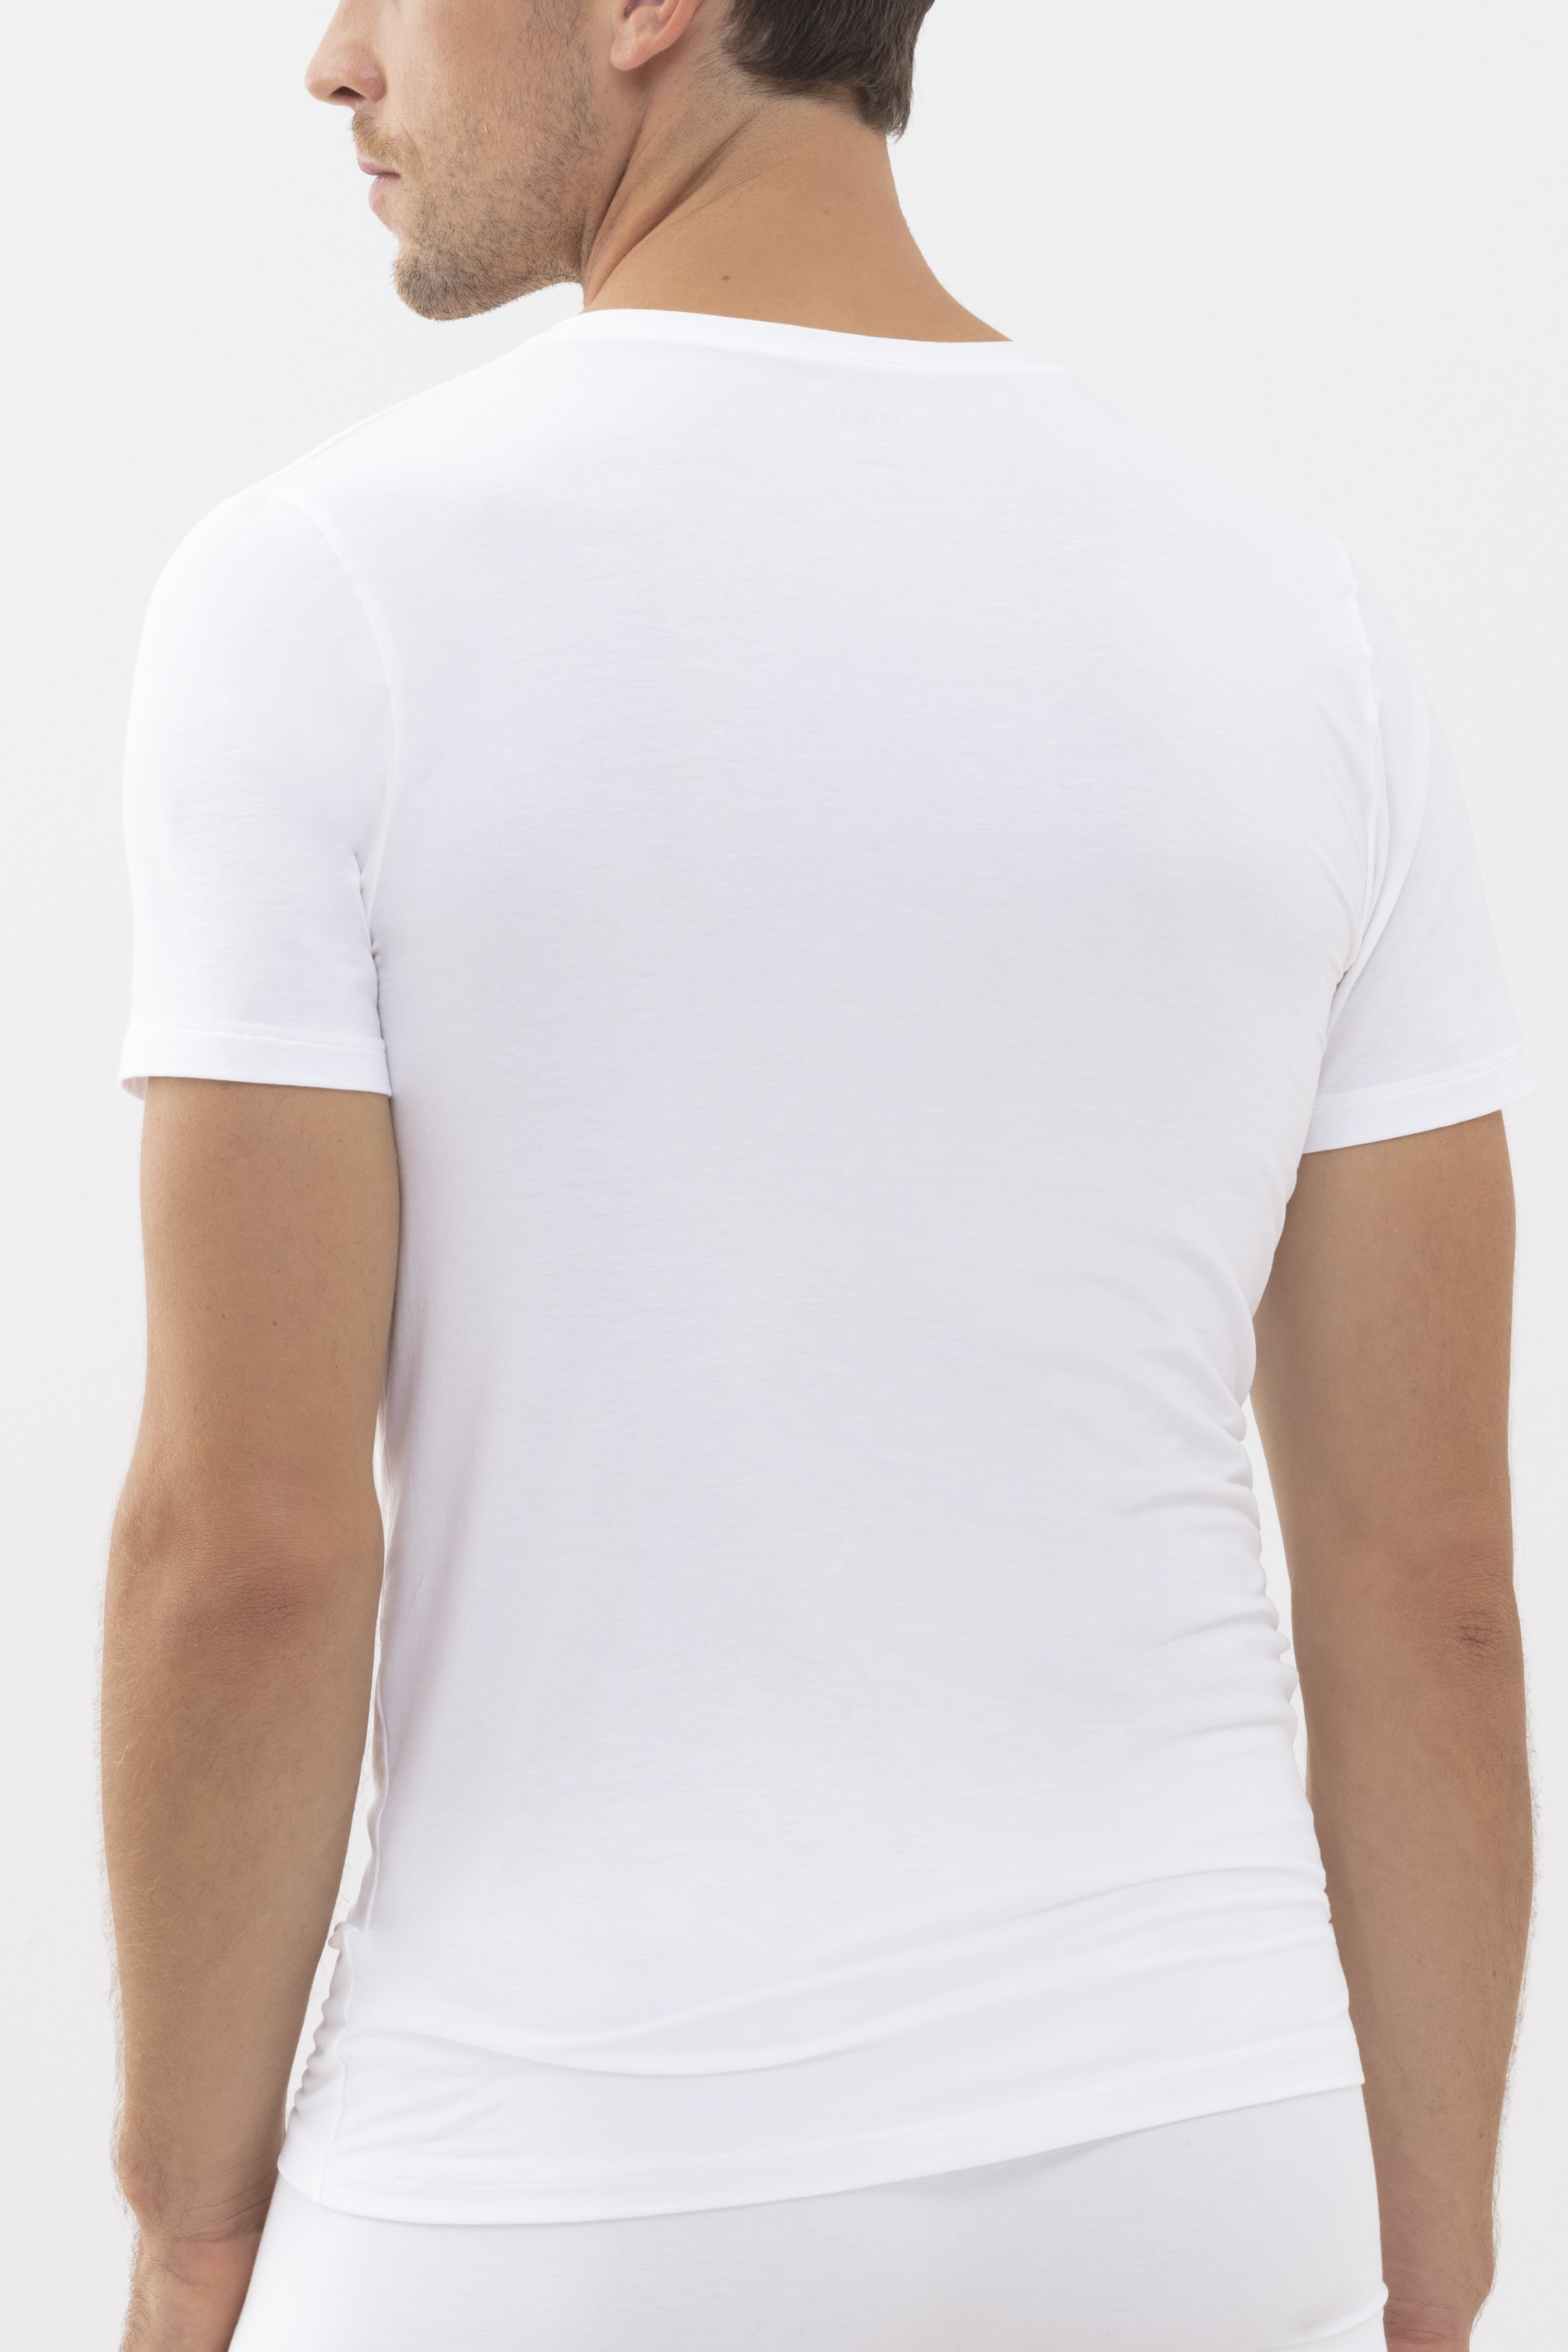 T-Shirt Weiss Serie Superior Modal Rückansicht | mey®